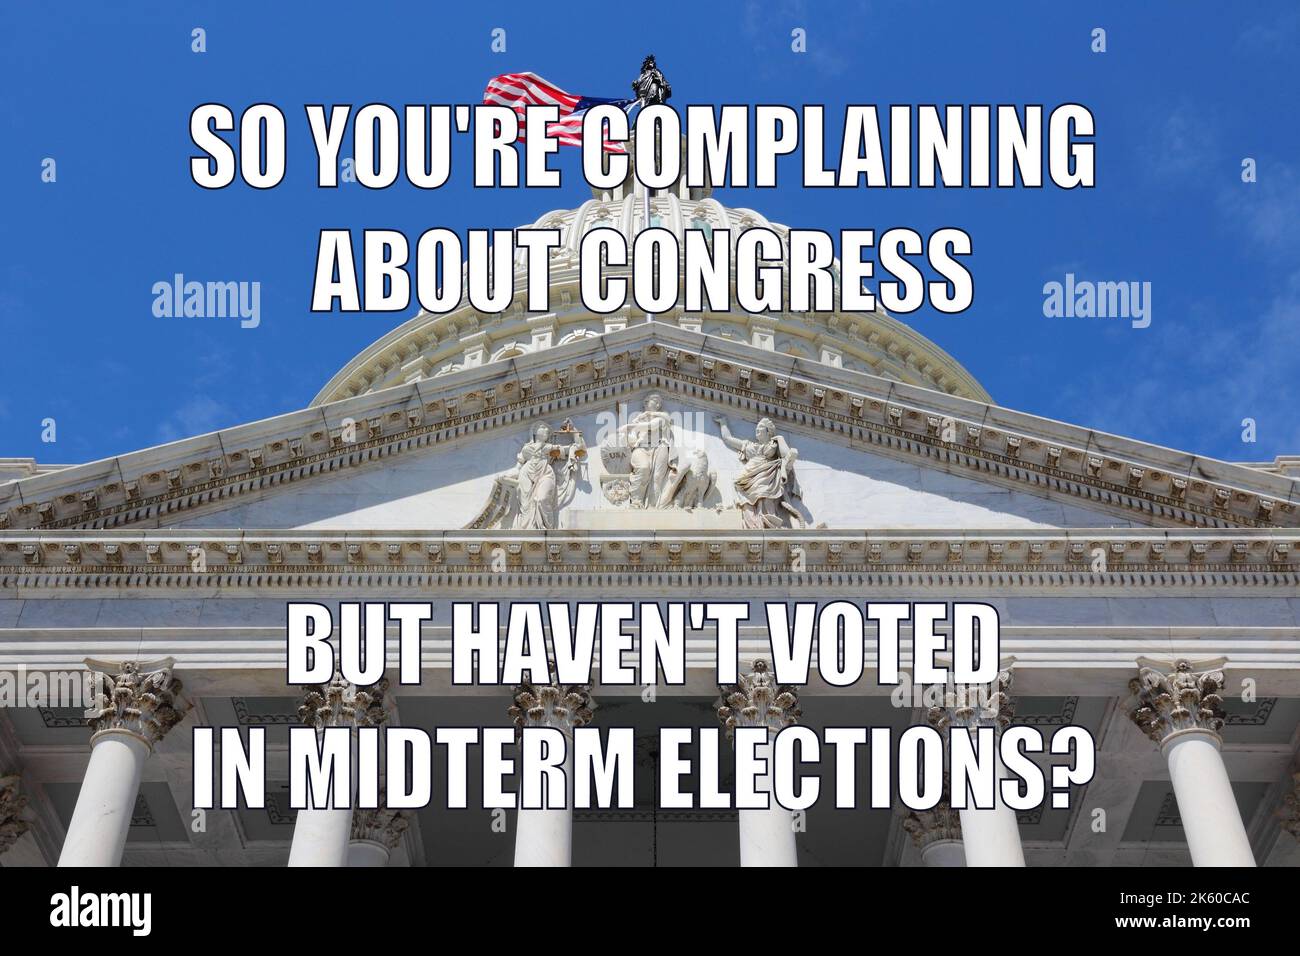 Politisches System der USA lustiges Meme für Social Media Sharing. Humor über die Zwischenwahlen in den USA und die Unzufriedenheit der Nichtwähler im Kongress. Stockfoto